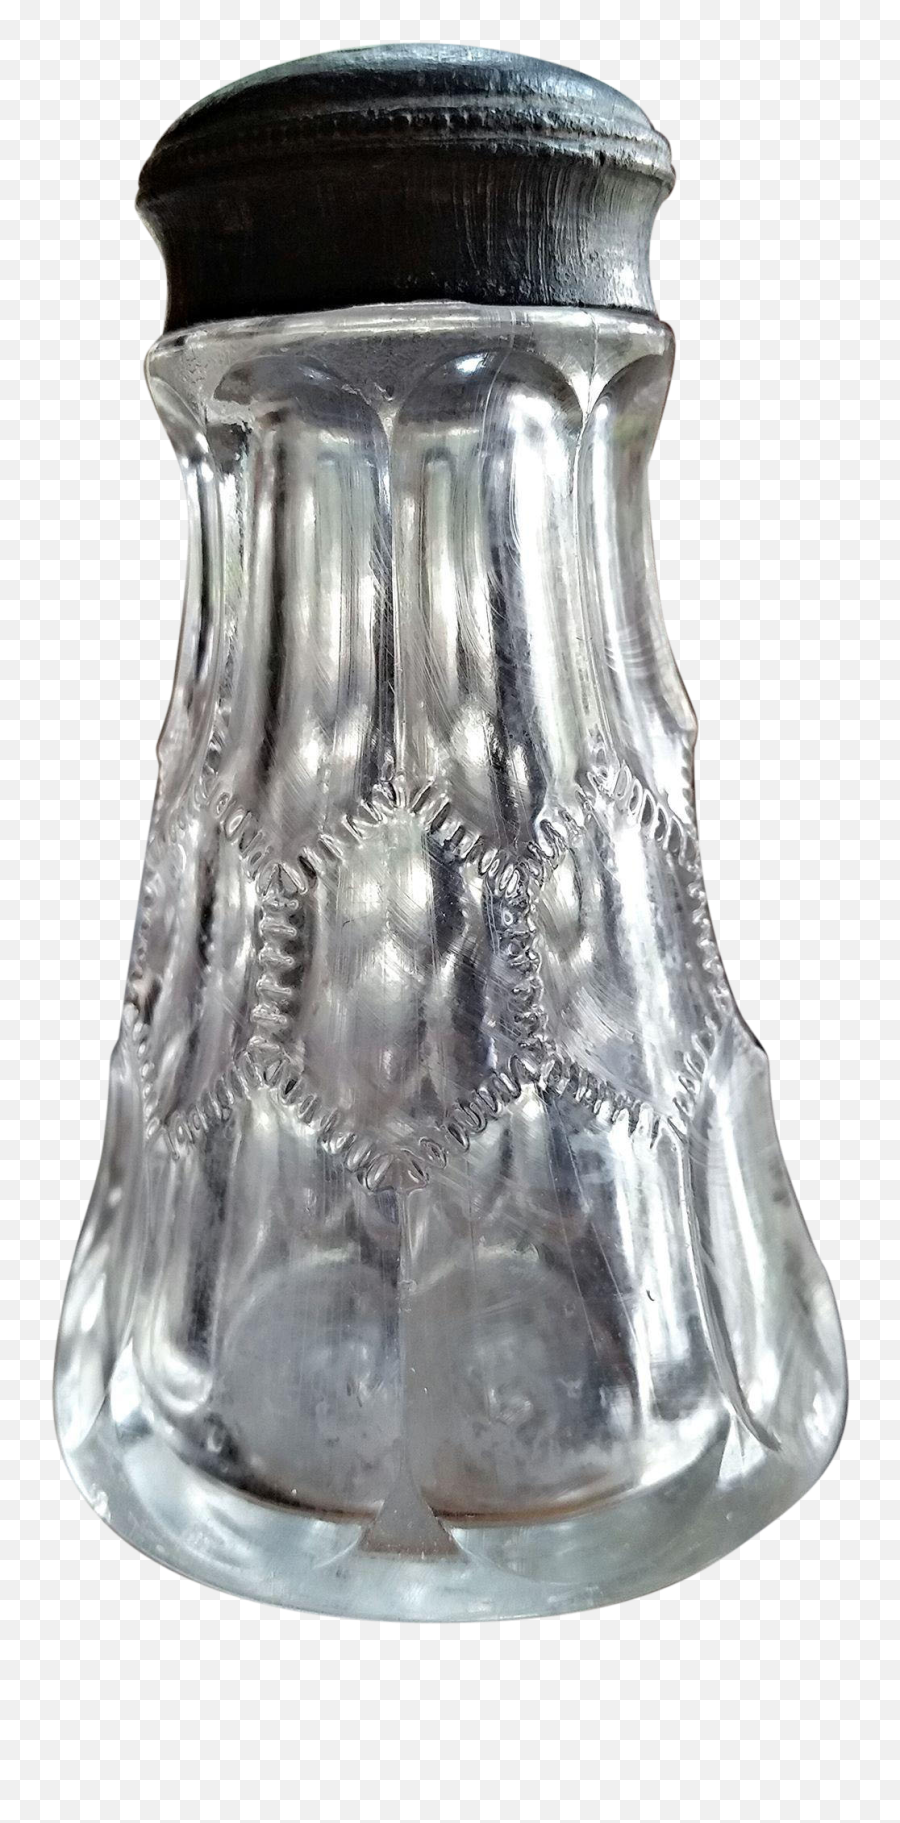 Salt Shaker Transparent 15966 Themeus - Glass Bottle Png,Salt Shaker Transparent Background